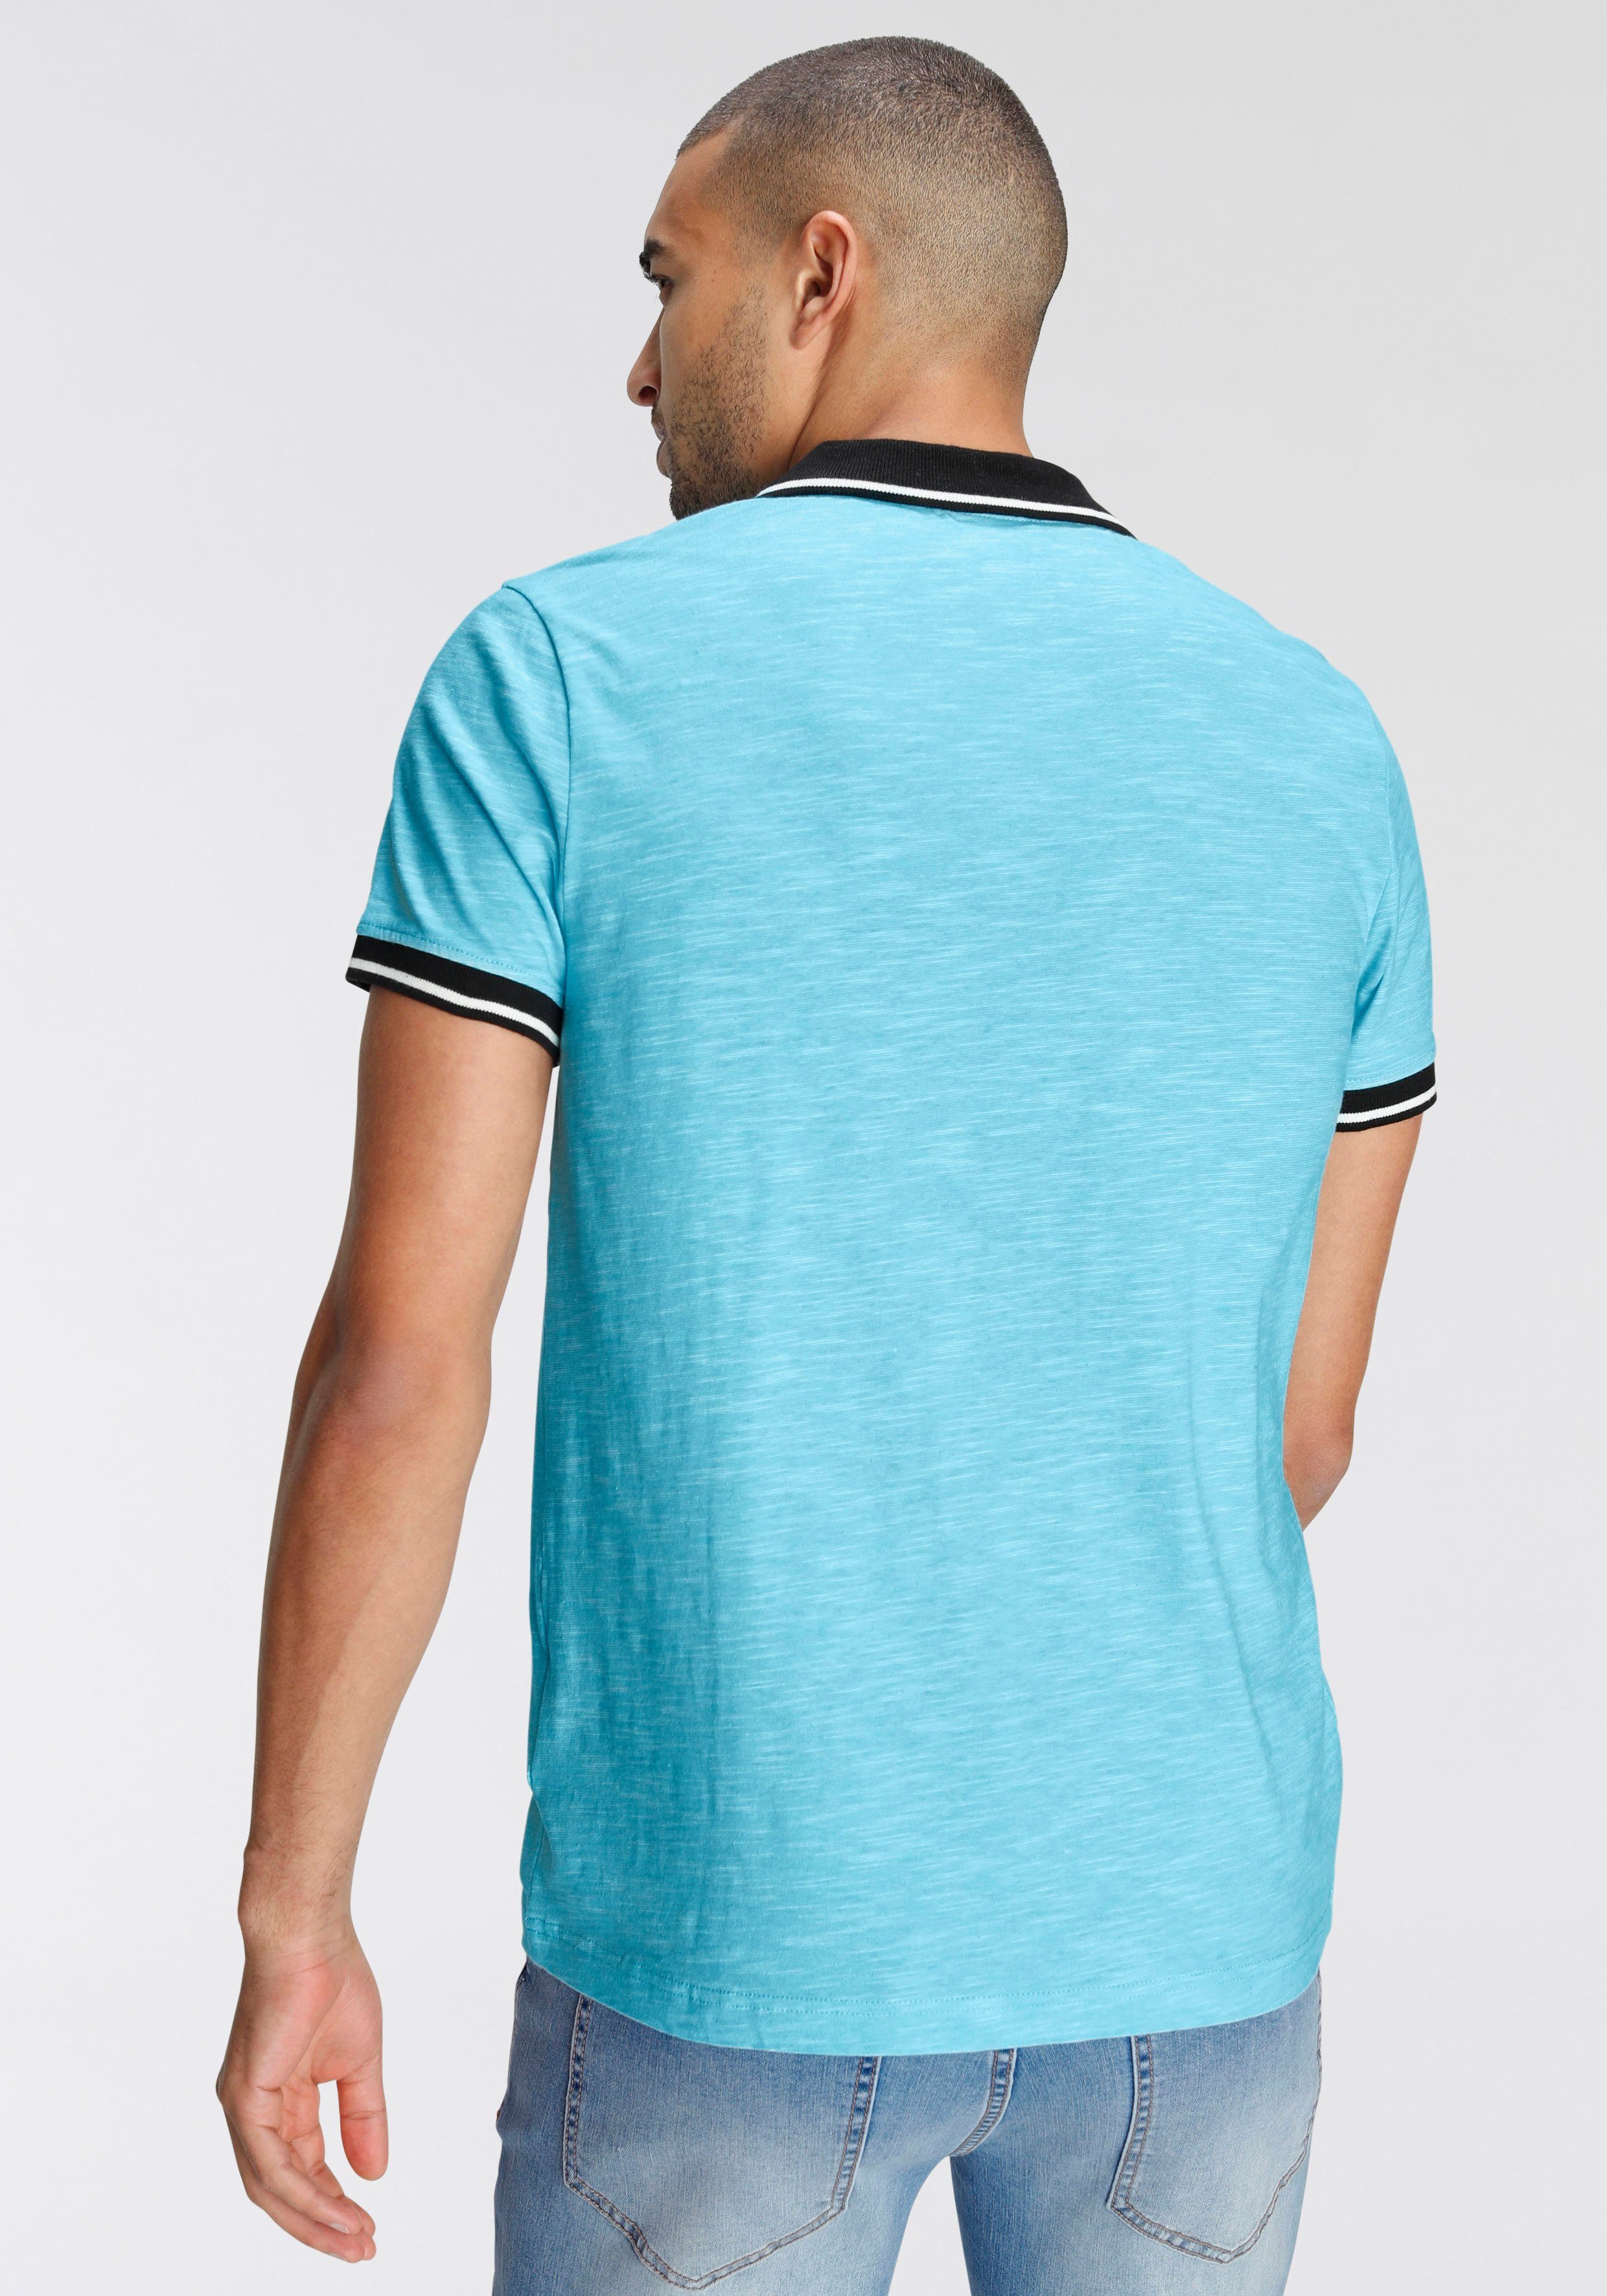 AJC Poloshirt mit kontrastfarbenen Details Kragen an türkis-meliert Ärmeln und